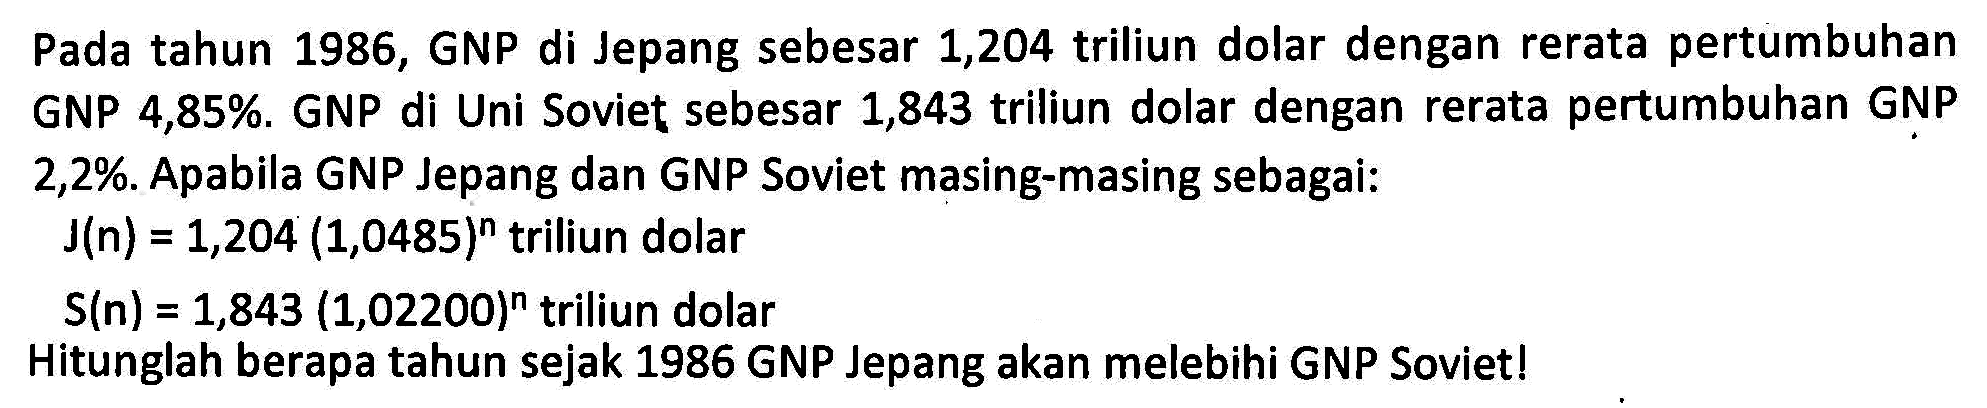 Pada tahun 1986, GNP di Jepang sebesar 1,204 triliun dolar dengan rerata pertumbuhan GNP di Uni Soviet sebesar 1,843 triliun dolar dengan rerata pertumbuhan GNP GNP 4,85%. 2,2%. Apabila GNP Jepang dan GNP Soviet masing-masing sebagai: J(n) 1,204 (1,0485)^n triliun dolar = S(n) = 1,843 (1,02200)^n triliun dolar Hitunglah berapa tahun sejak 1986 GNP Jepang akan melebihi GNP Soviet!